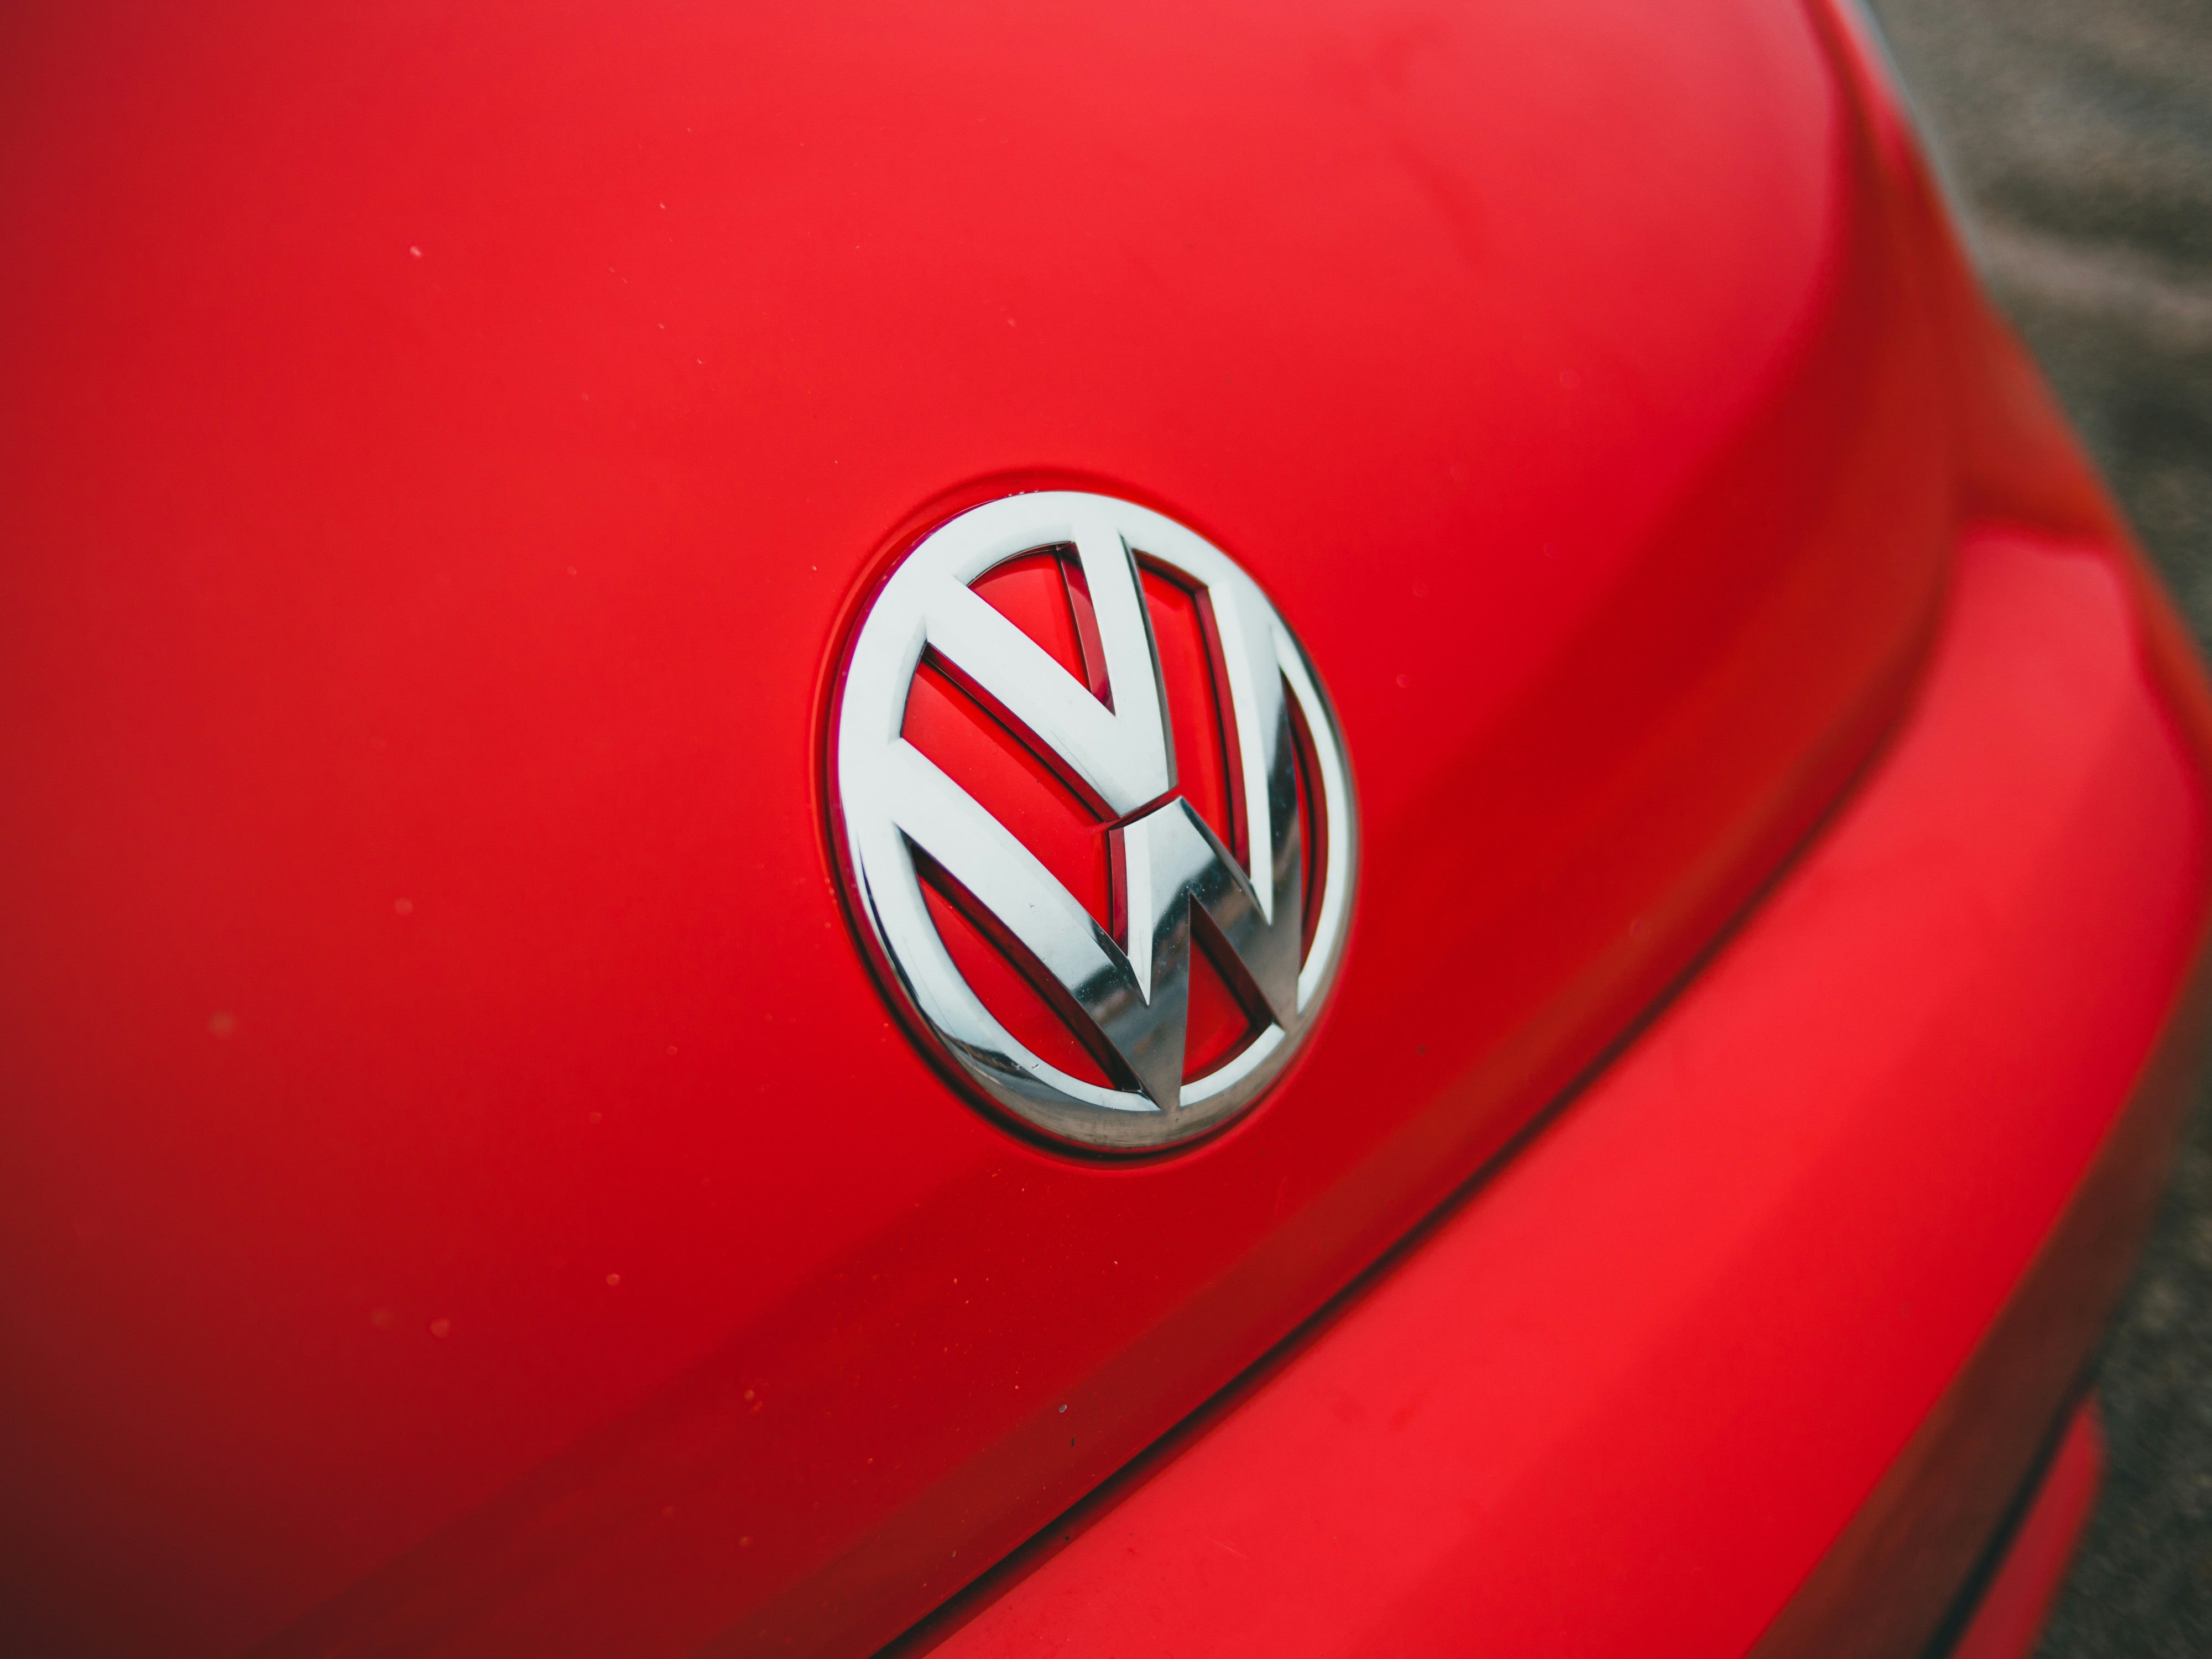 VW investiert Milliarden in den Verbrenner - Was ist da los?